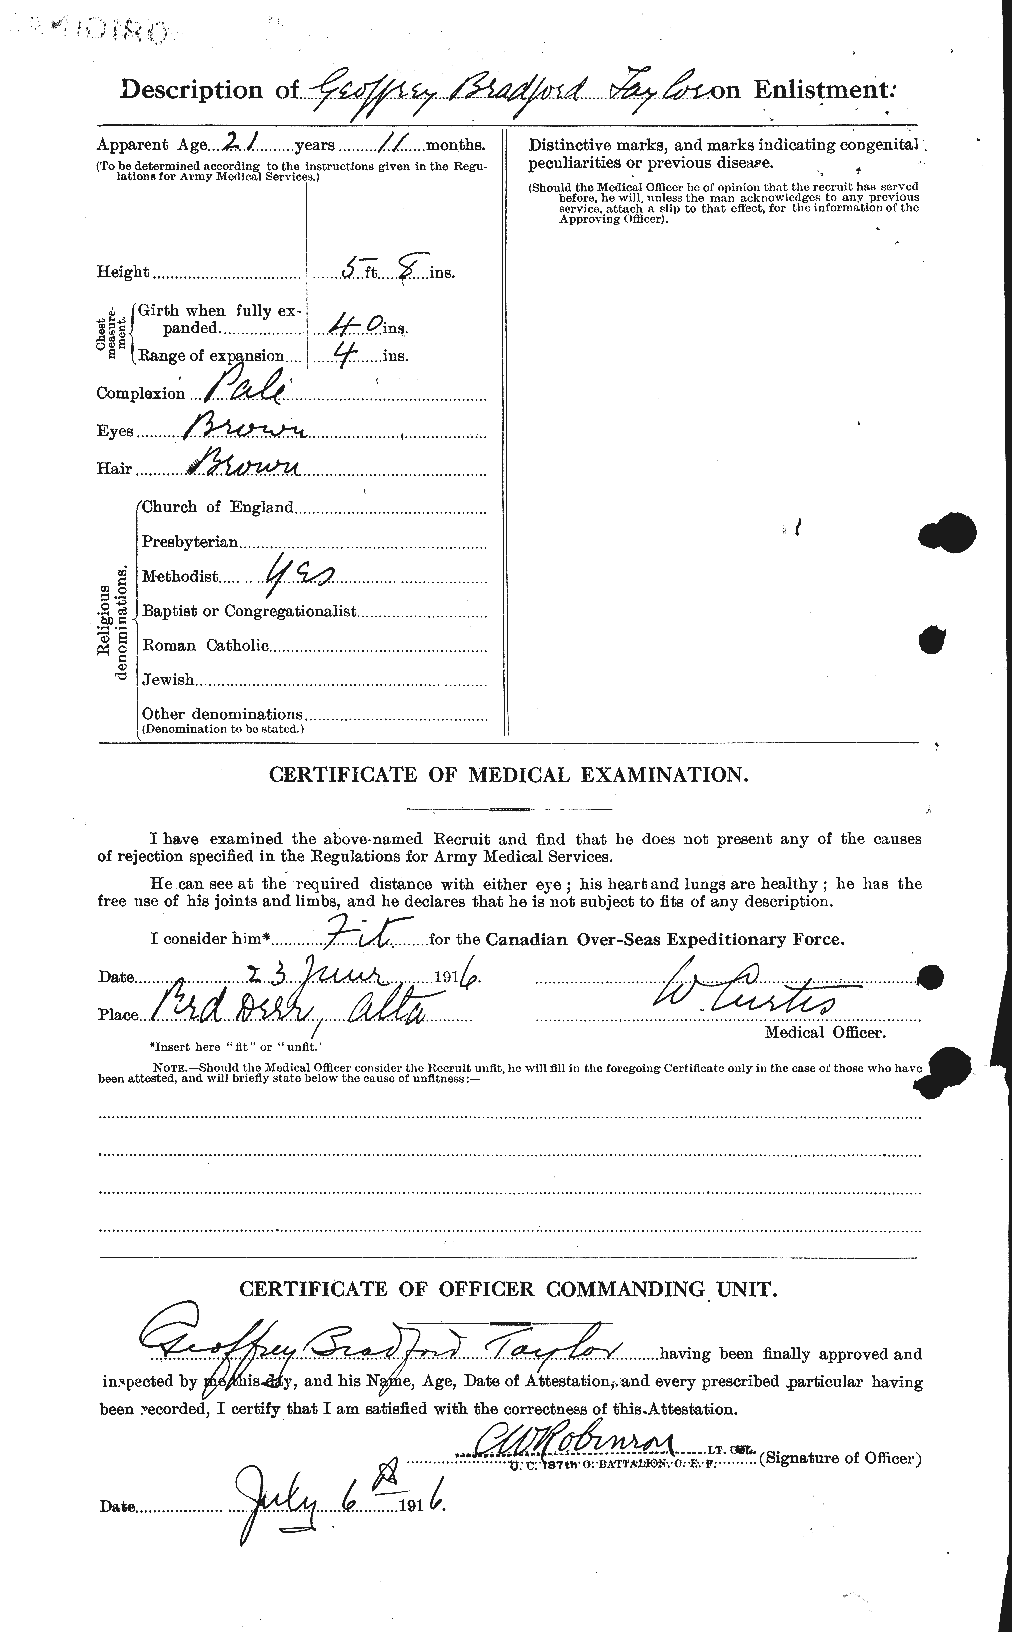 Dossiers du Personnel de la Première Guerre mondiale - CEC 625835b